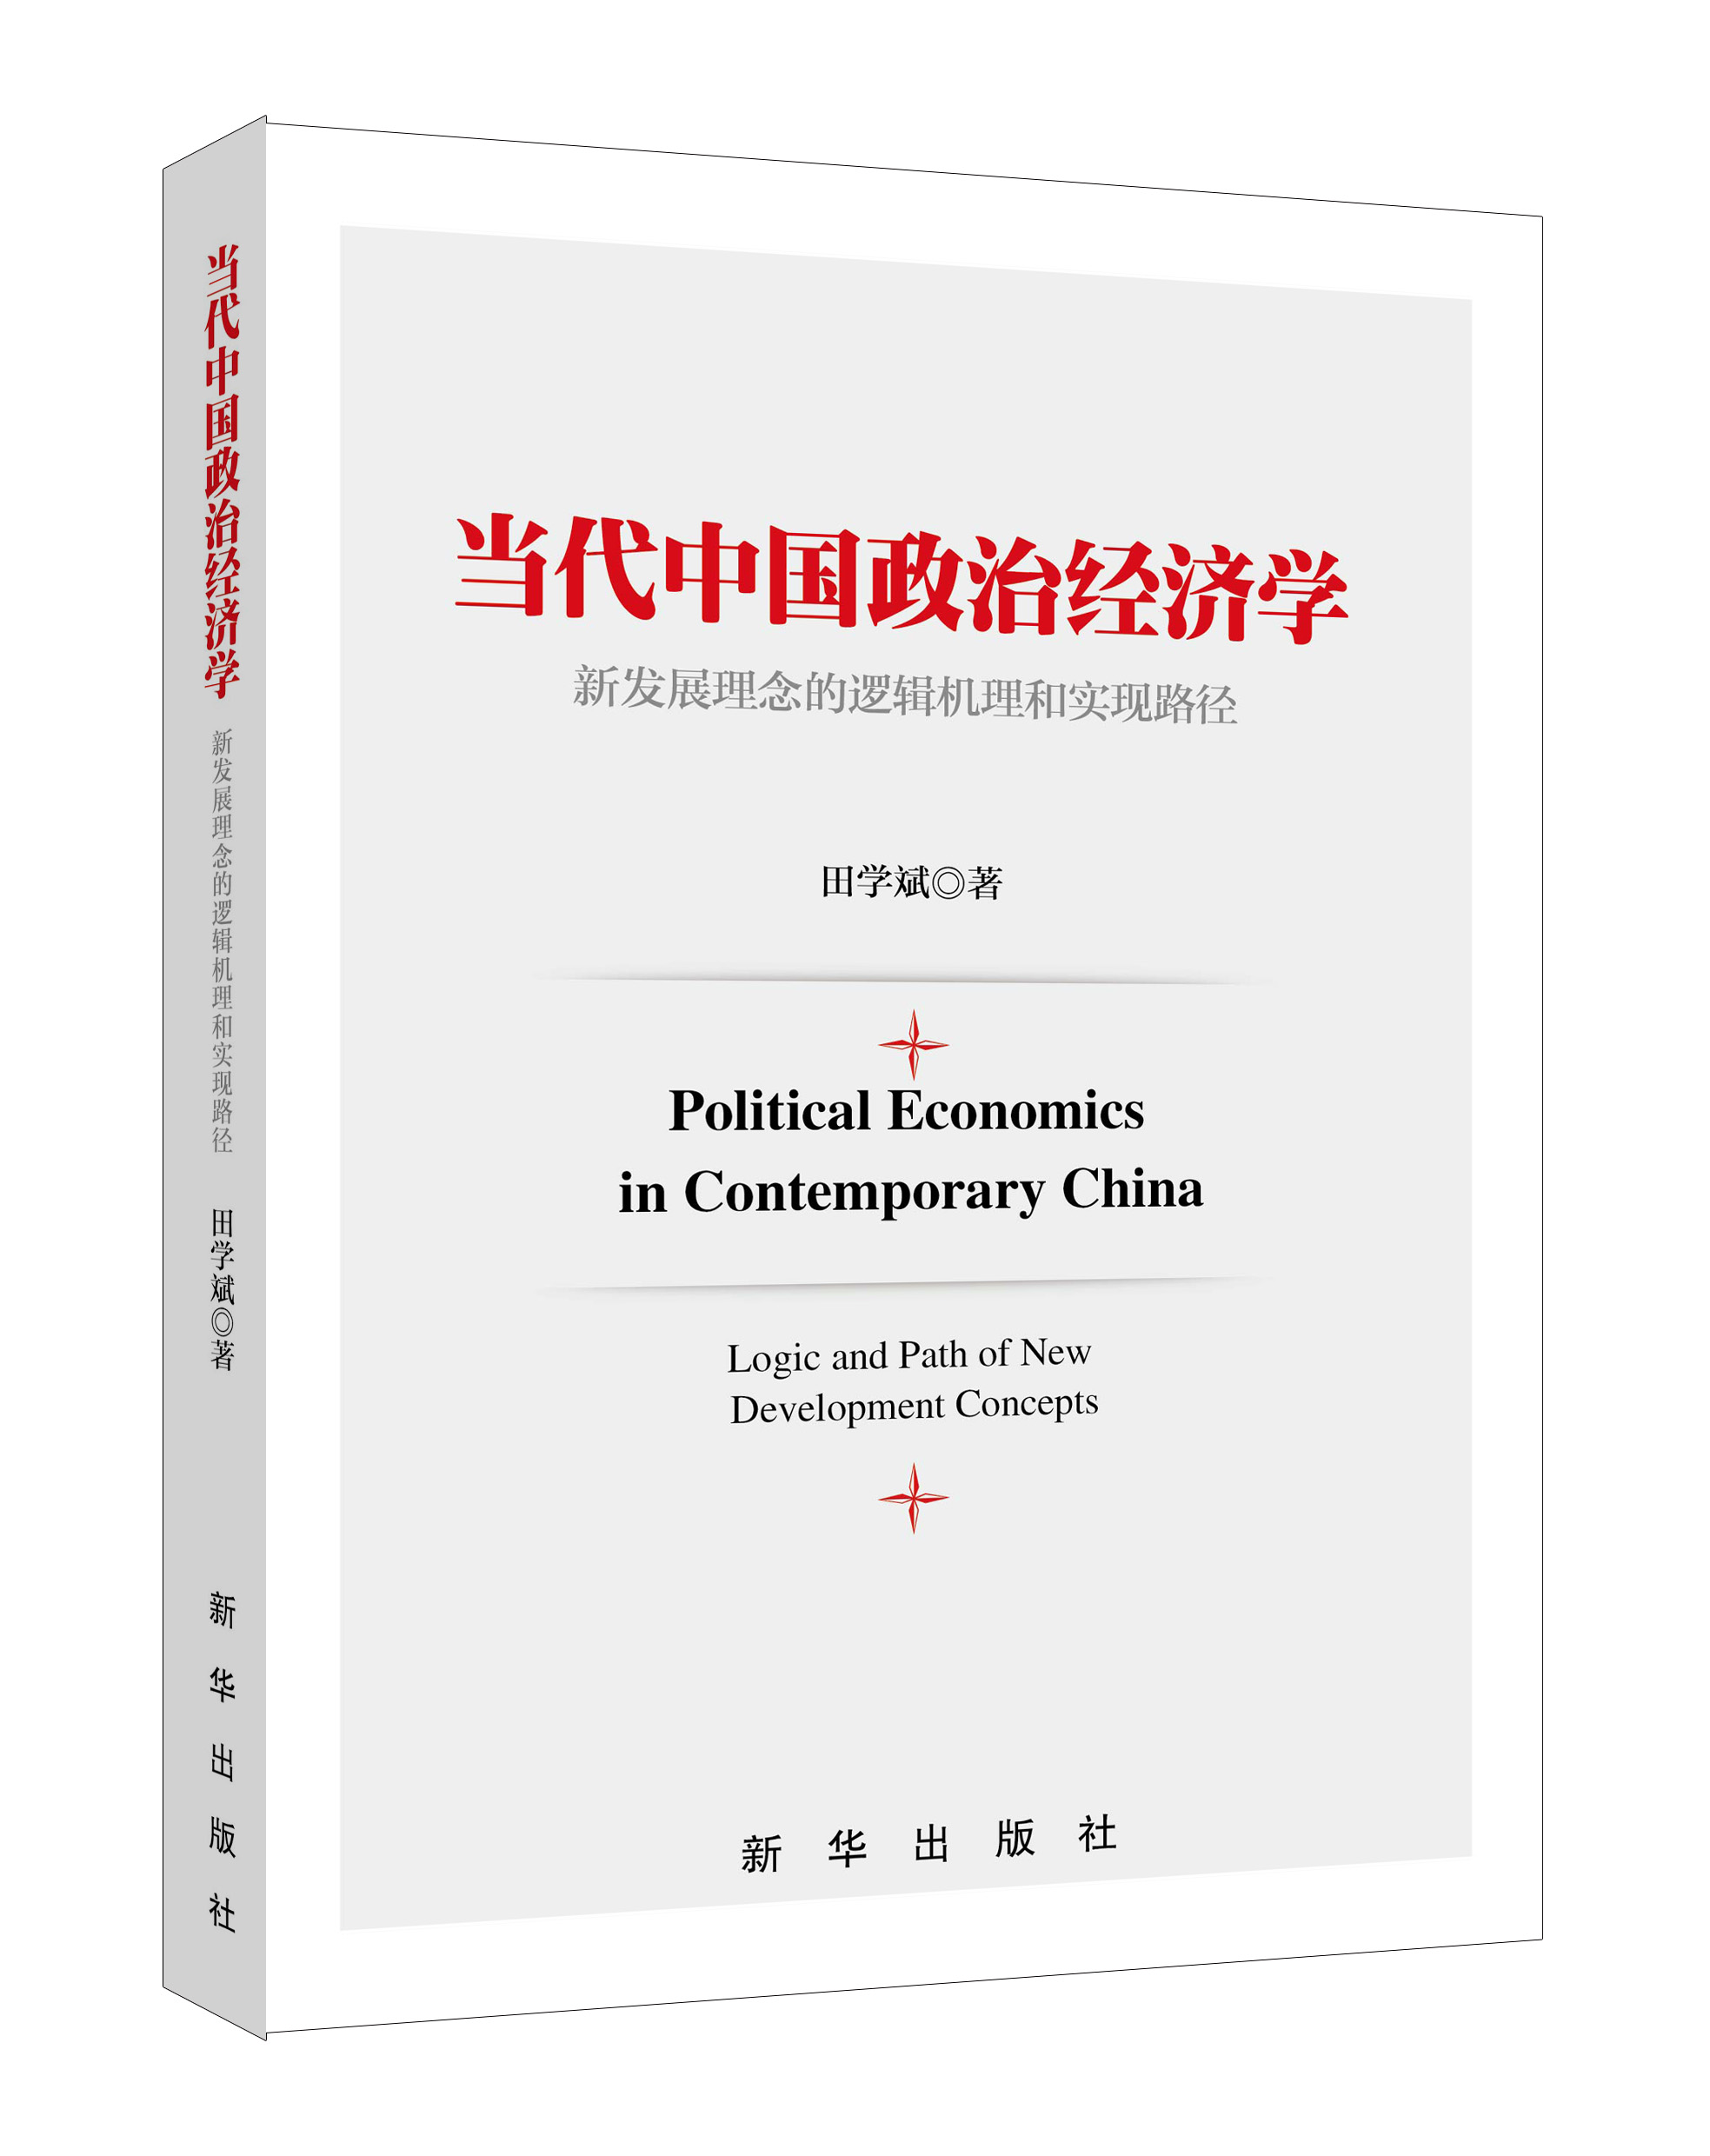 新发展理念是习近平经济思想的灵魂：读《当代中国政治经济学》有感